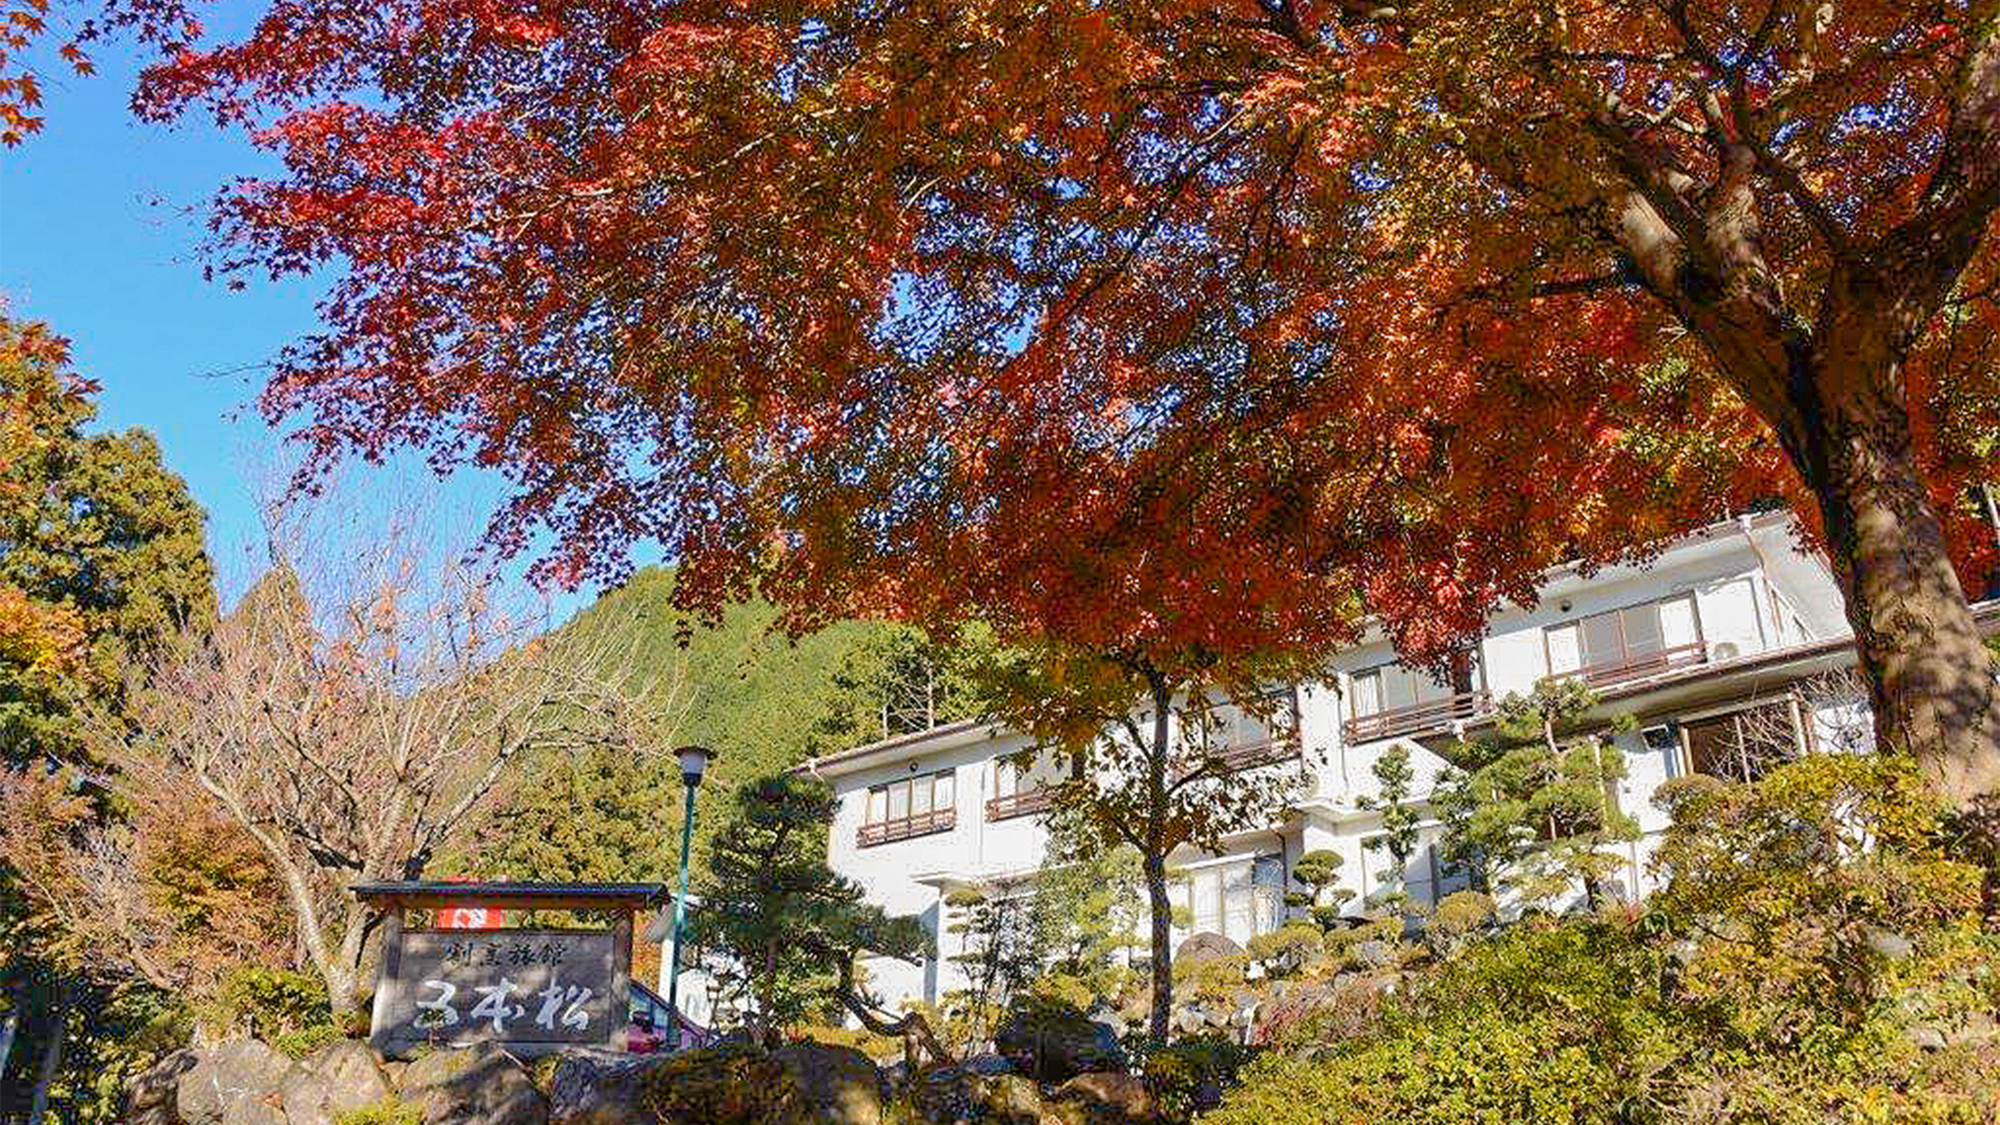 高尾山観光に便利な宿を教えてください。